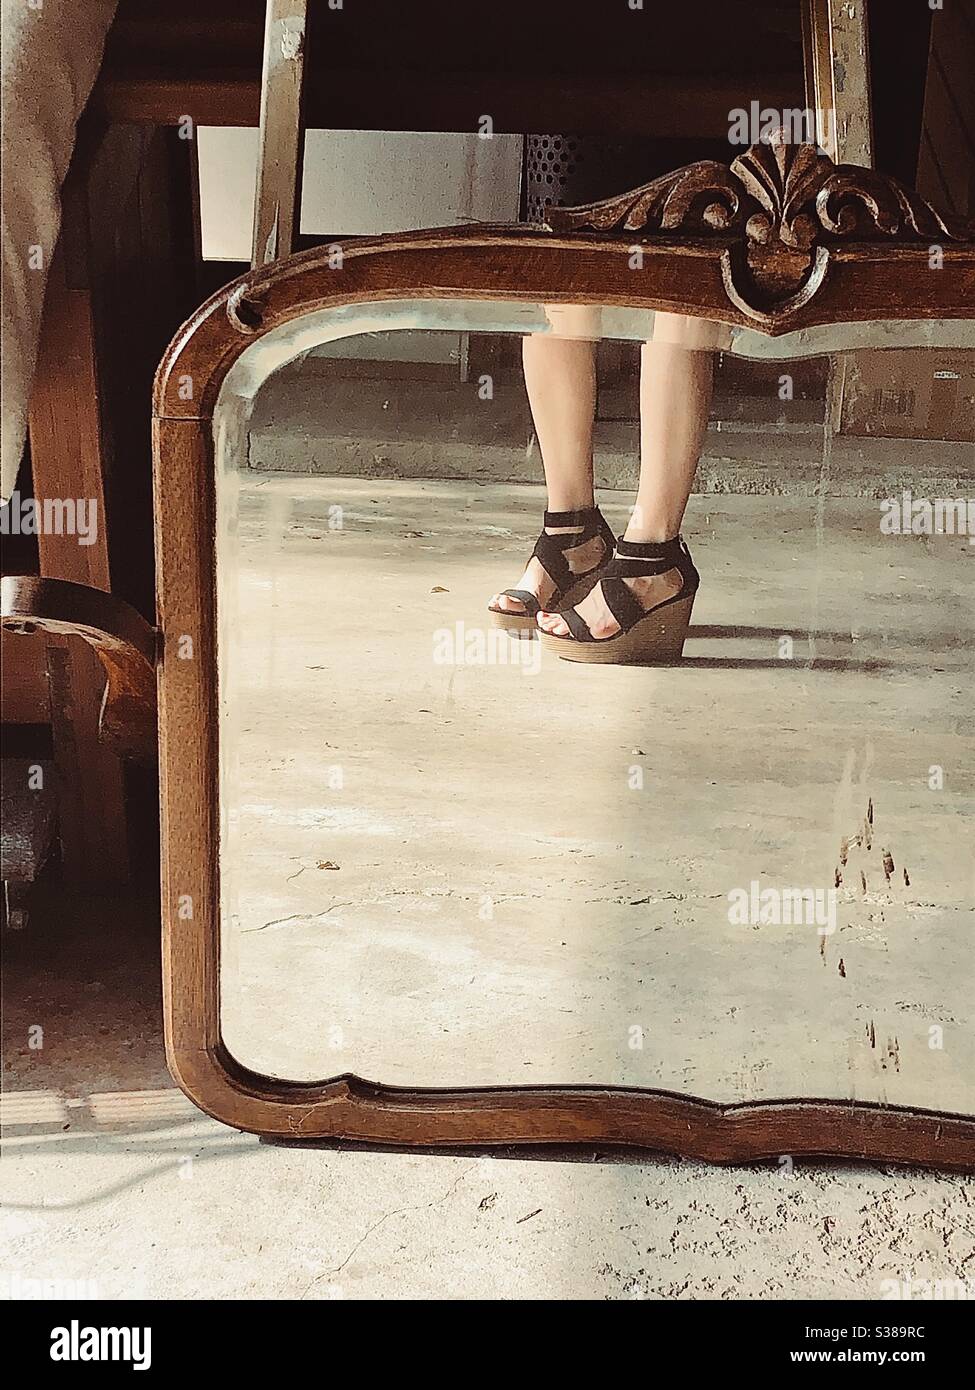 Reflet des jambes et des sandales de plate-forme d’une fille dans un miroir ancien, dans un cadre en bois. Banque D'Images